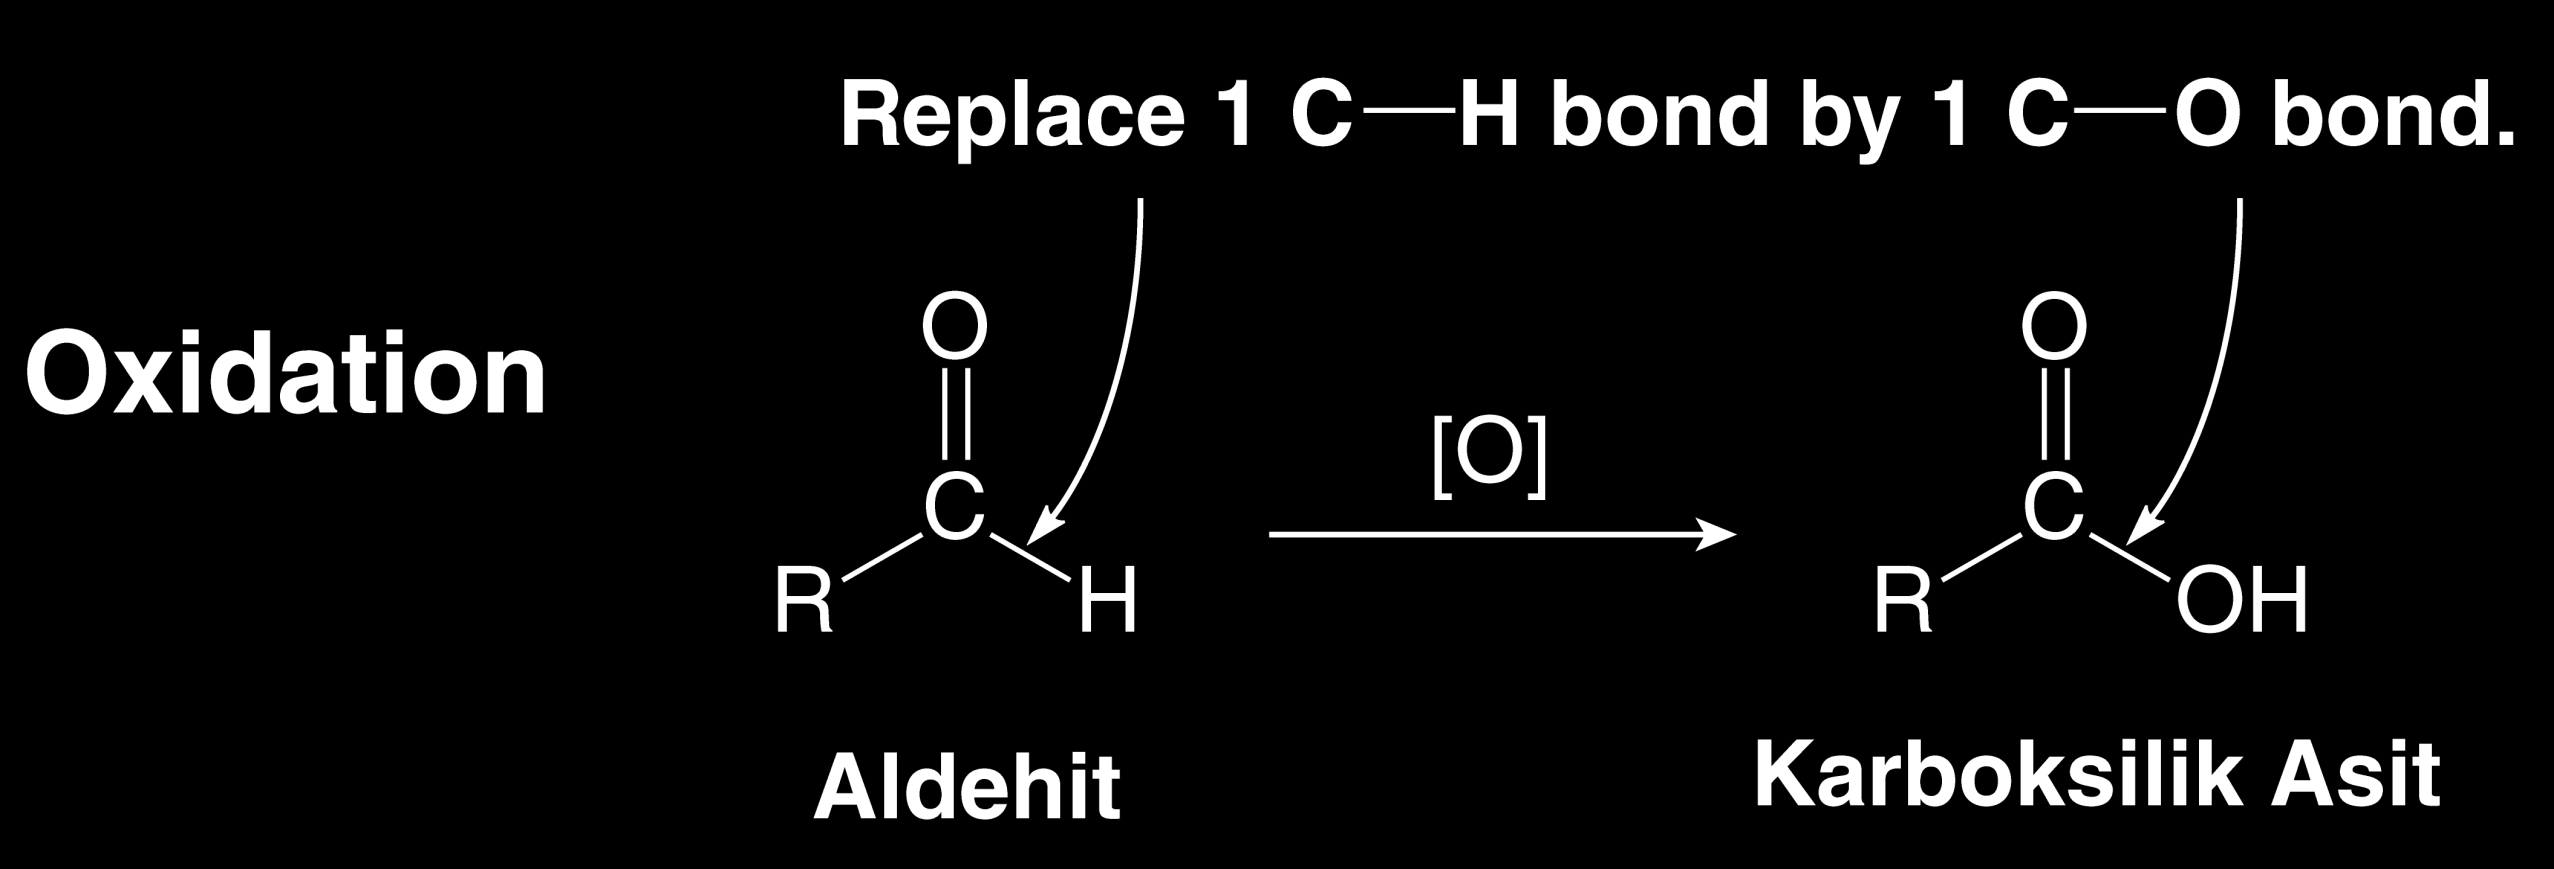 Oksidasyon C H bağı, C